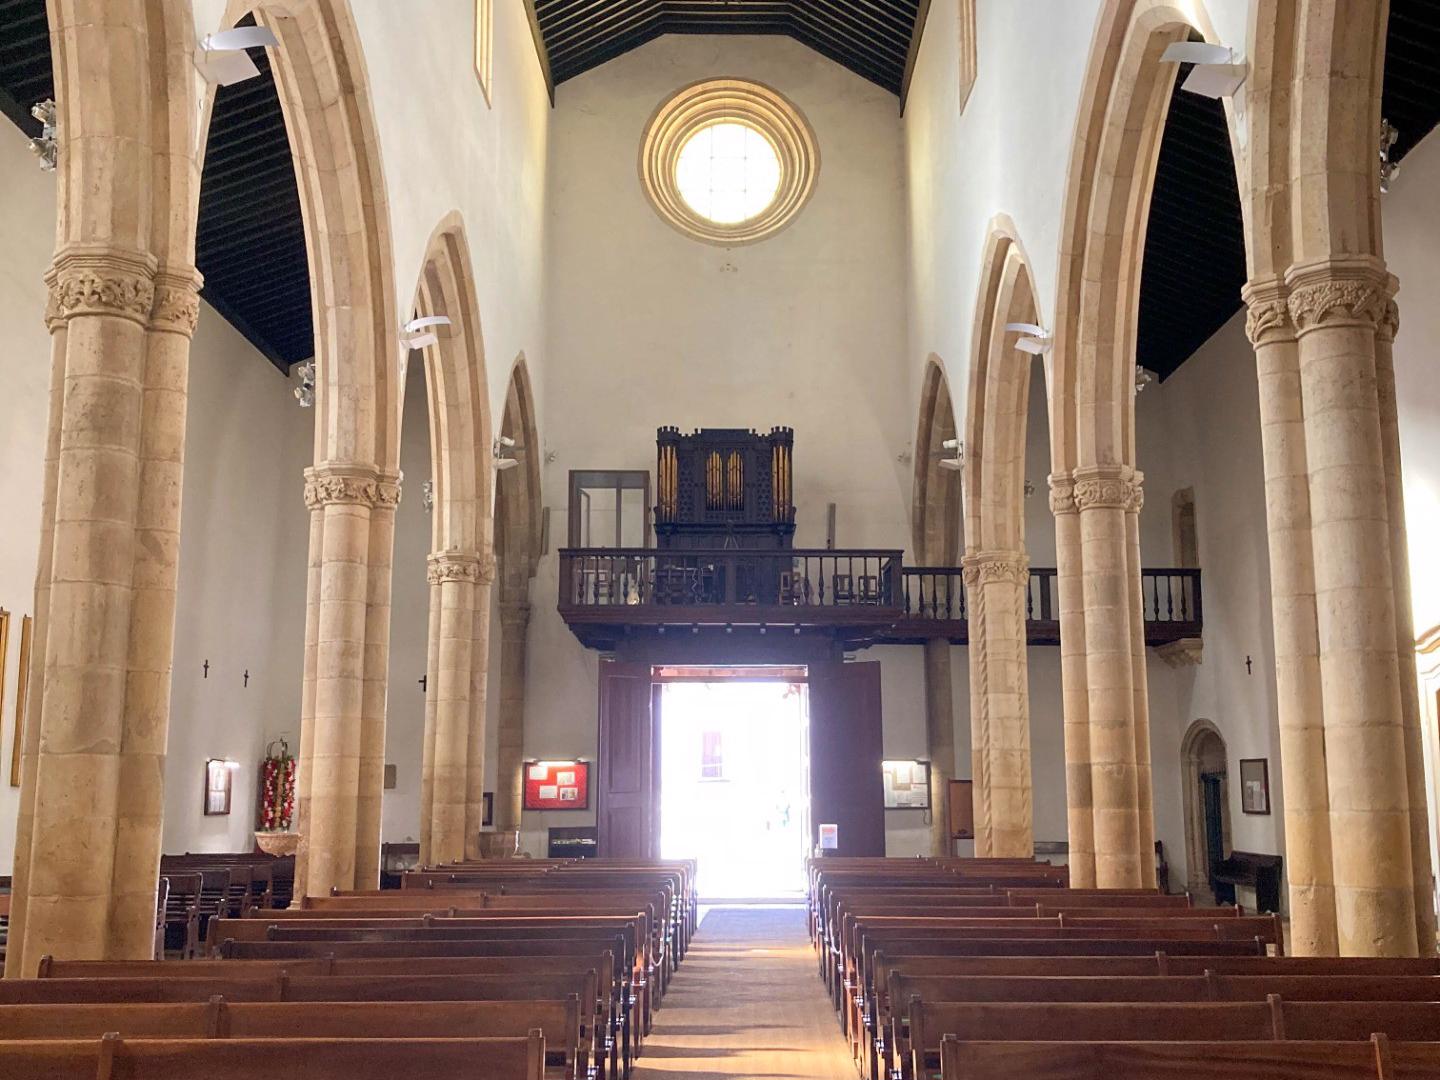 Recepção - A Igreja apresenta uma planta retangular, estruturada em três naves e com uma torre sineira com um relógio do século XVI. Os seus portais são luxuosamente decorados ao estilo manuelino.